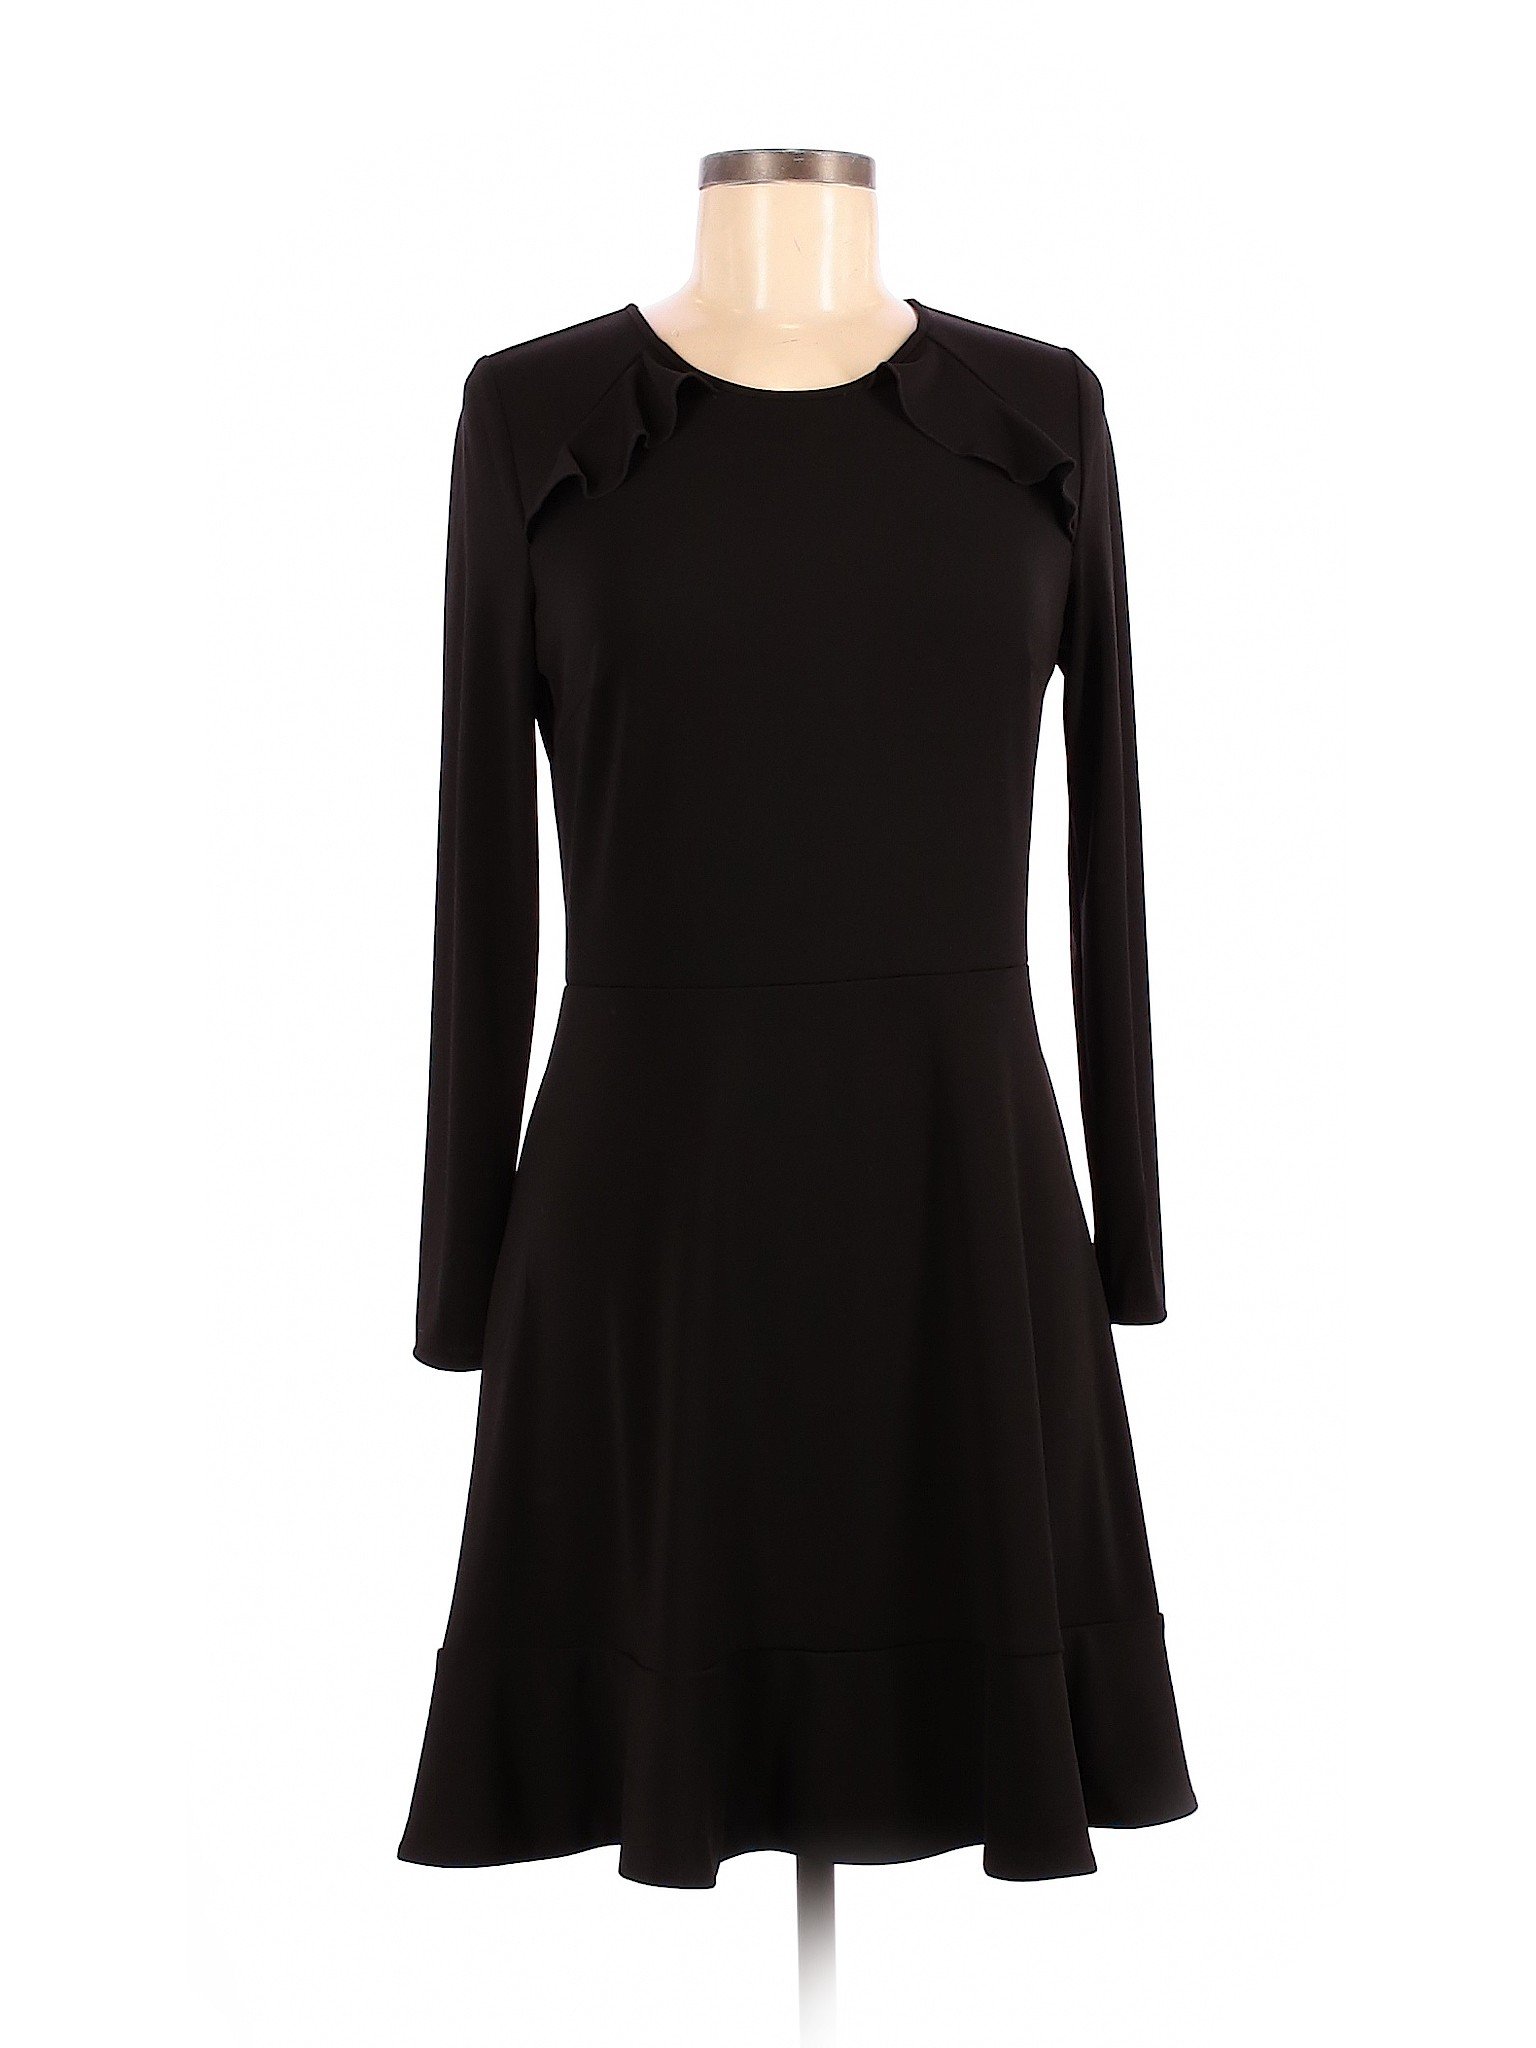 Ann Taylor Women Black Cocktail Dress 6 Petites | eBay